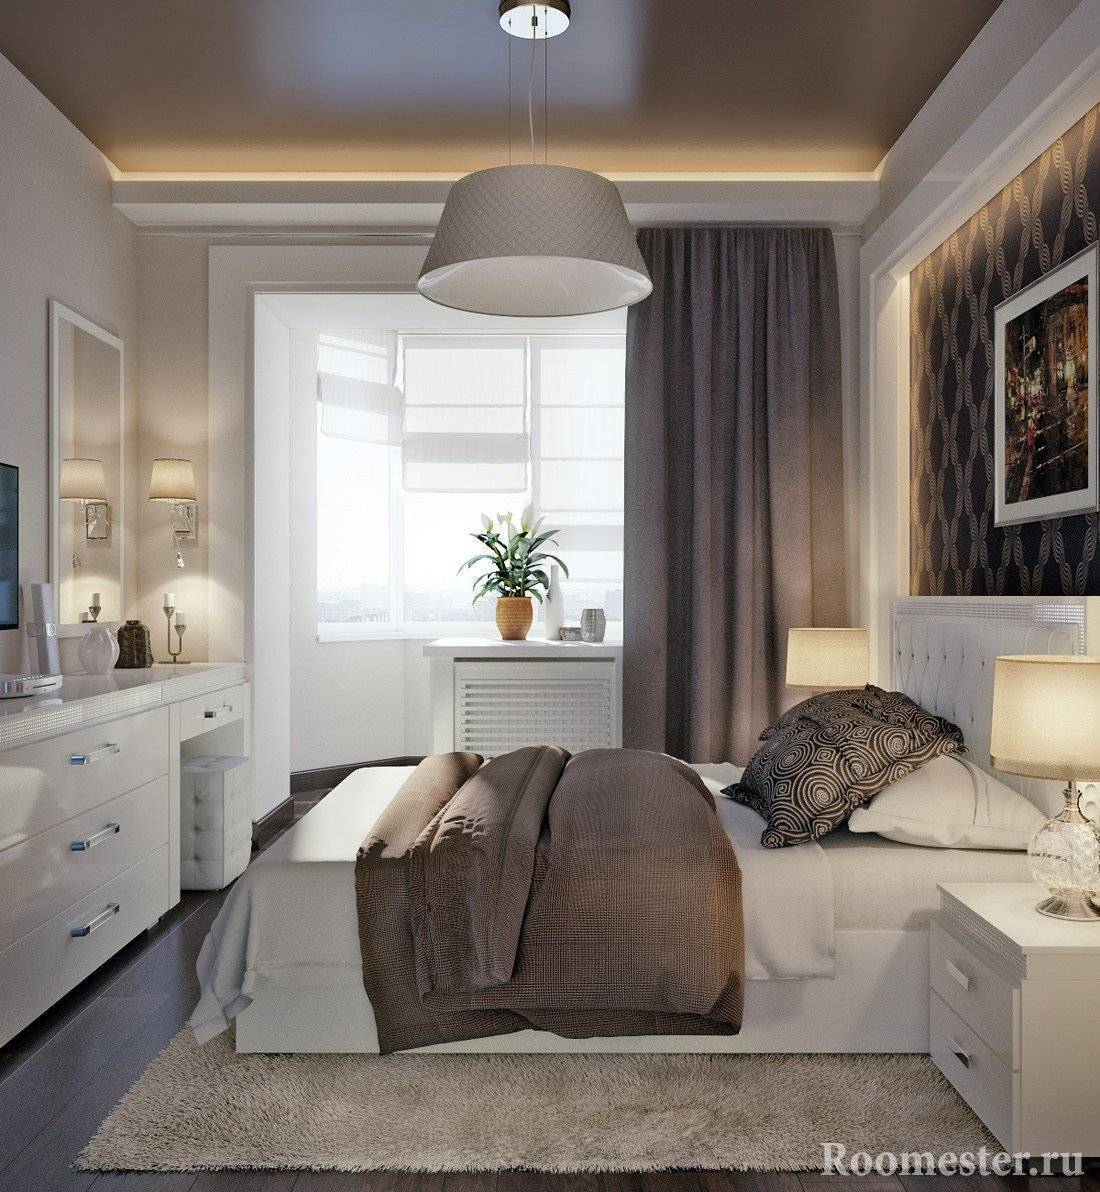 Дизайн маленькой спальни 9 кв. м фото: интерьер современный, как обставить стильно, реальный ремонт в хрущевке